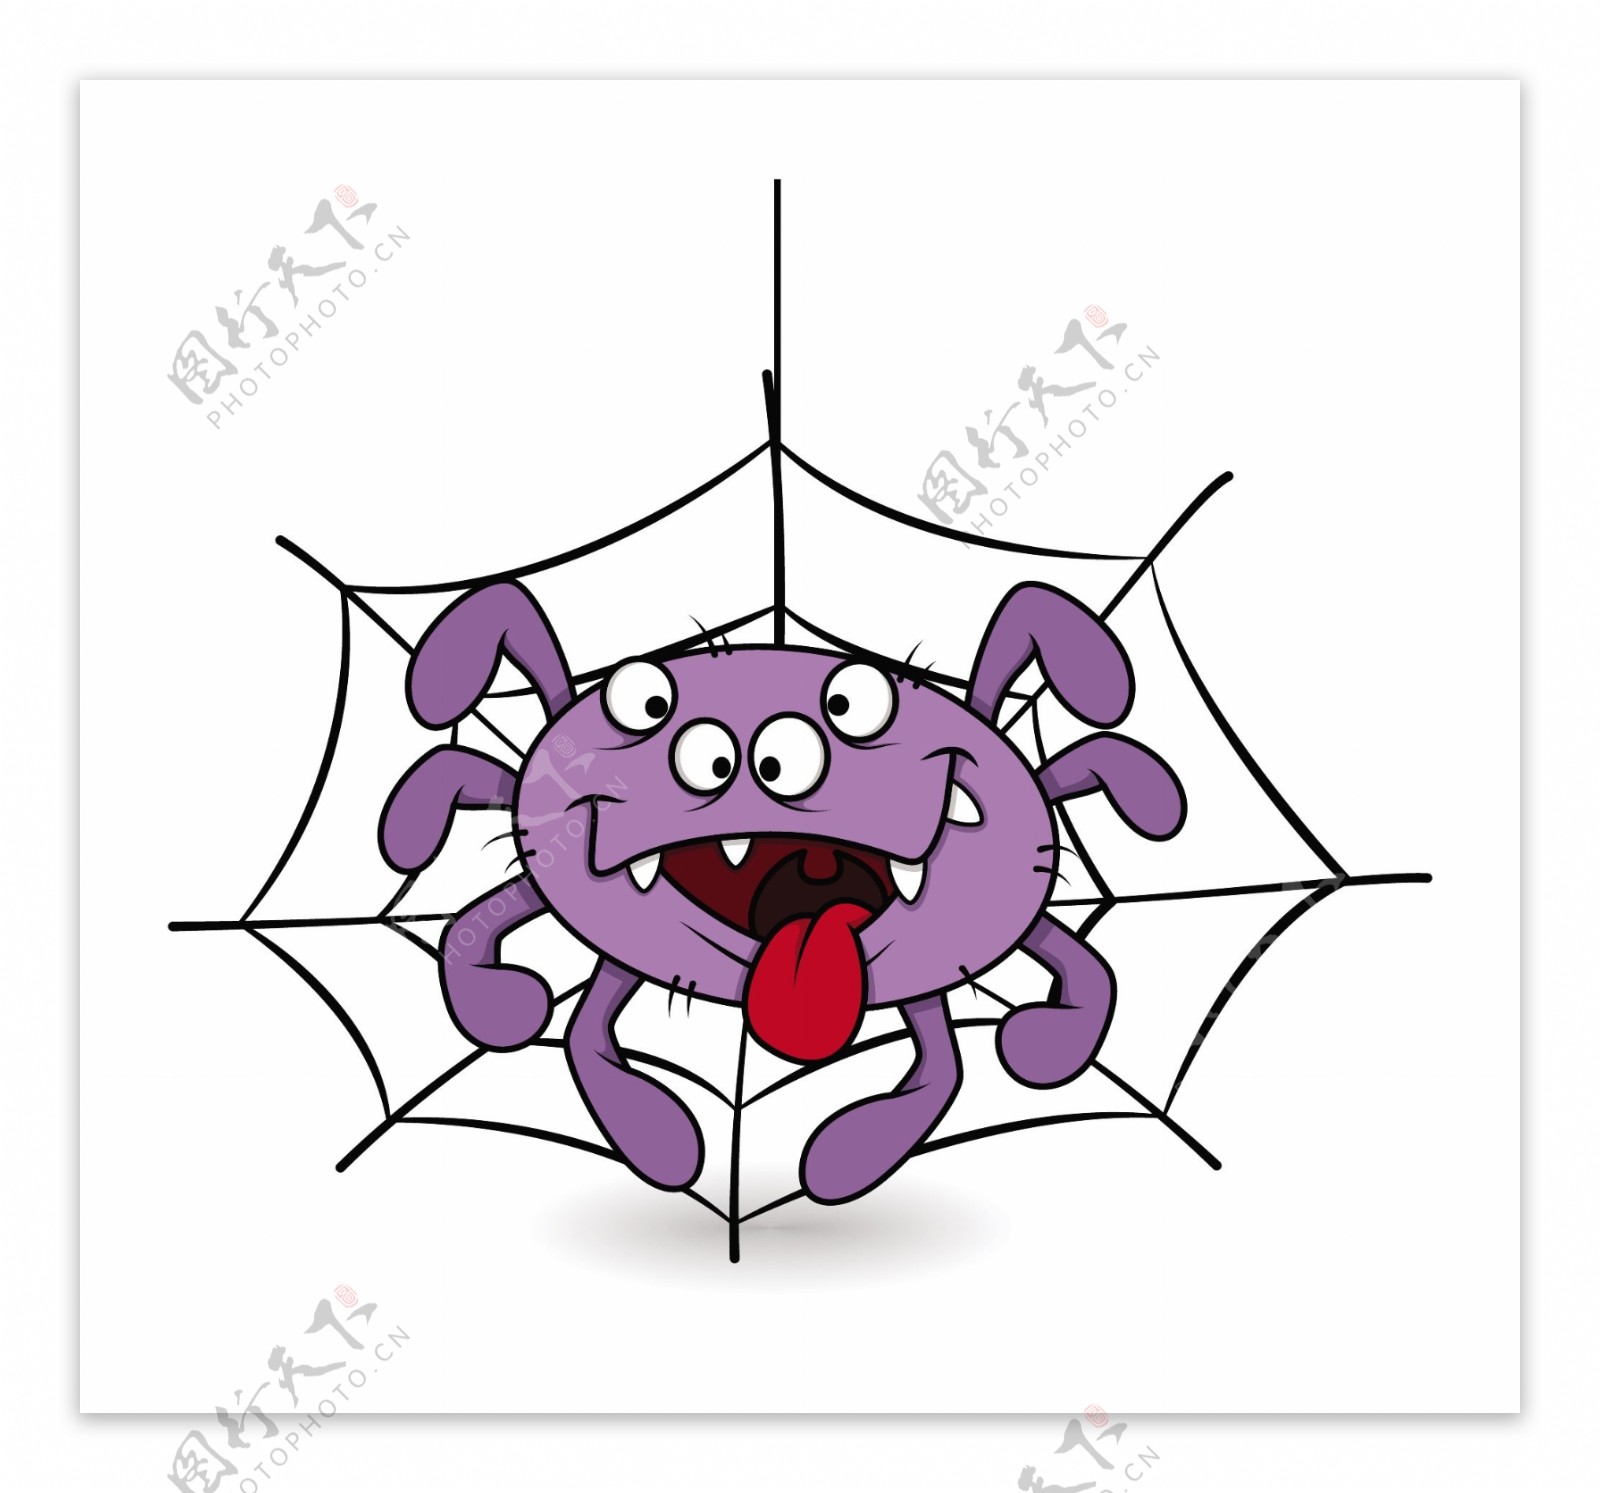 有趣的蜘蛛的舌头万圣节插画矢量